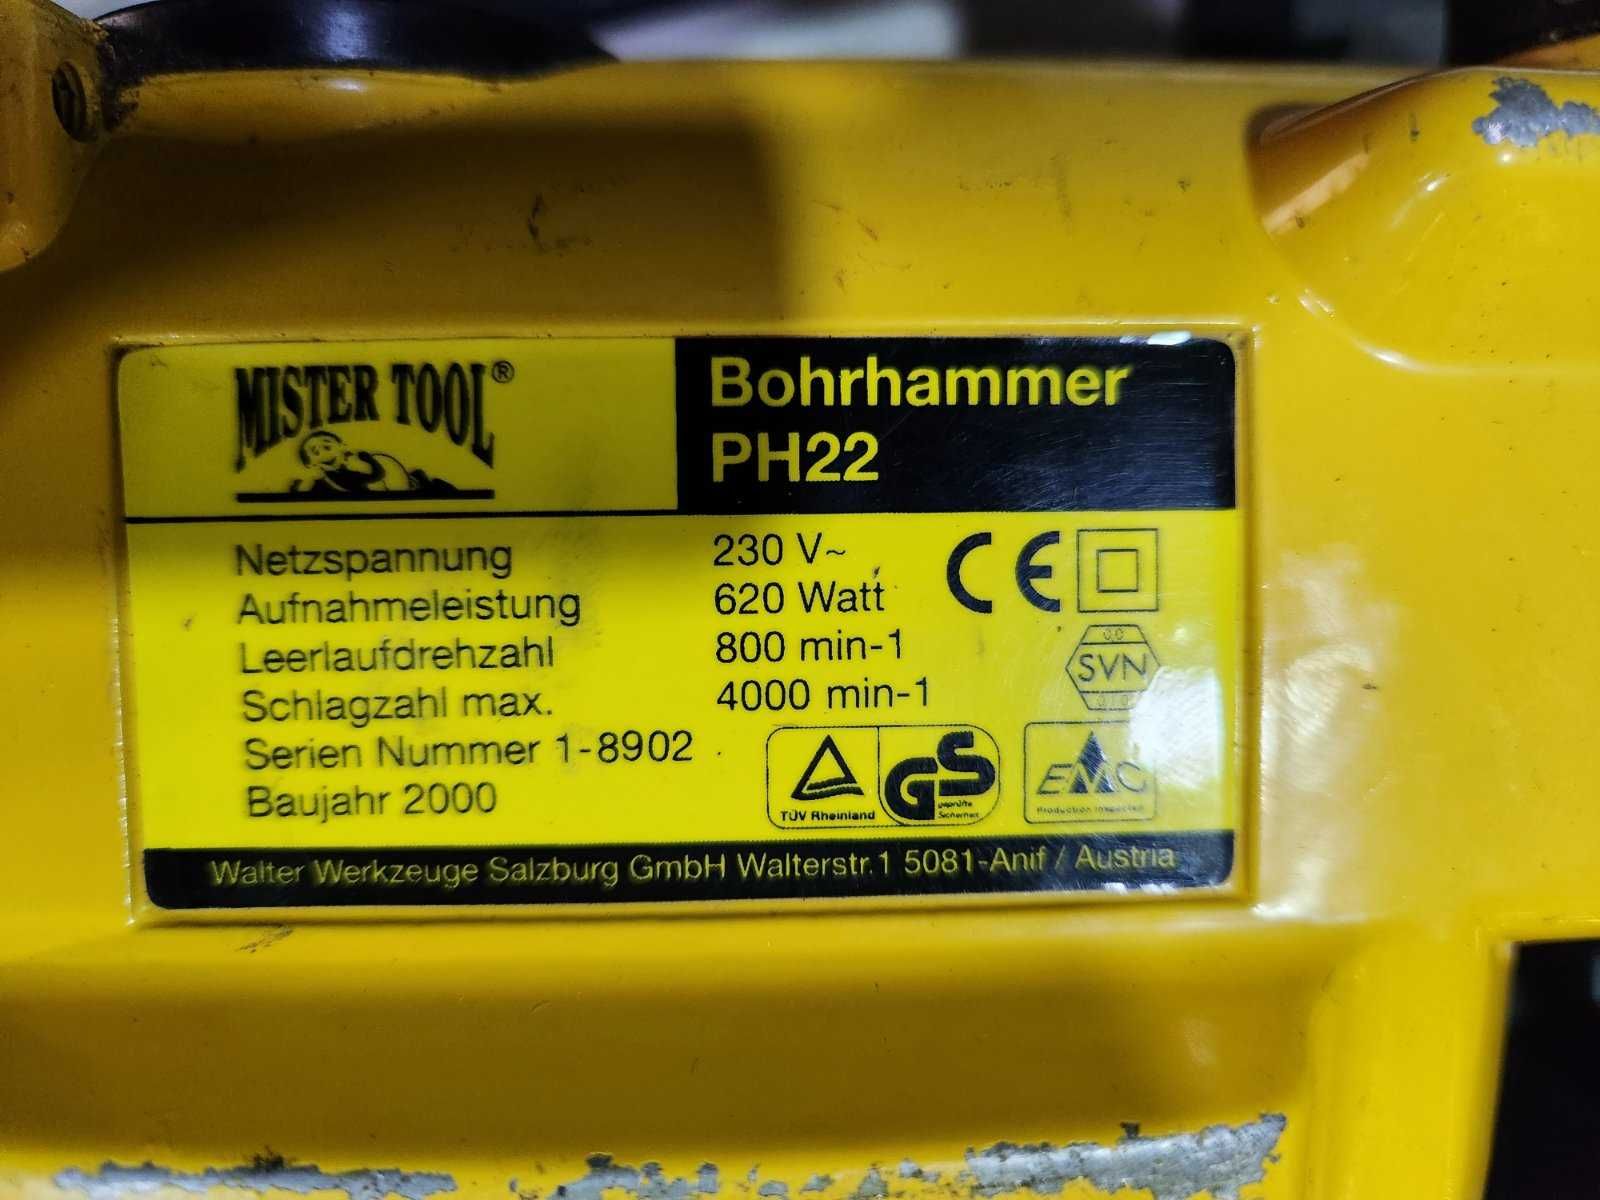 Къртач Mister Tool Bohrhammer PH22 620 Watt